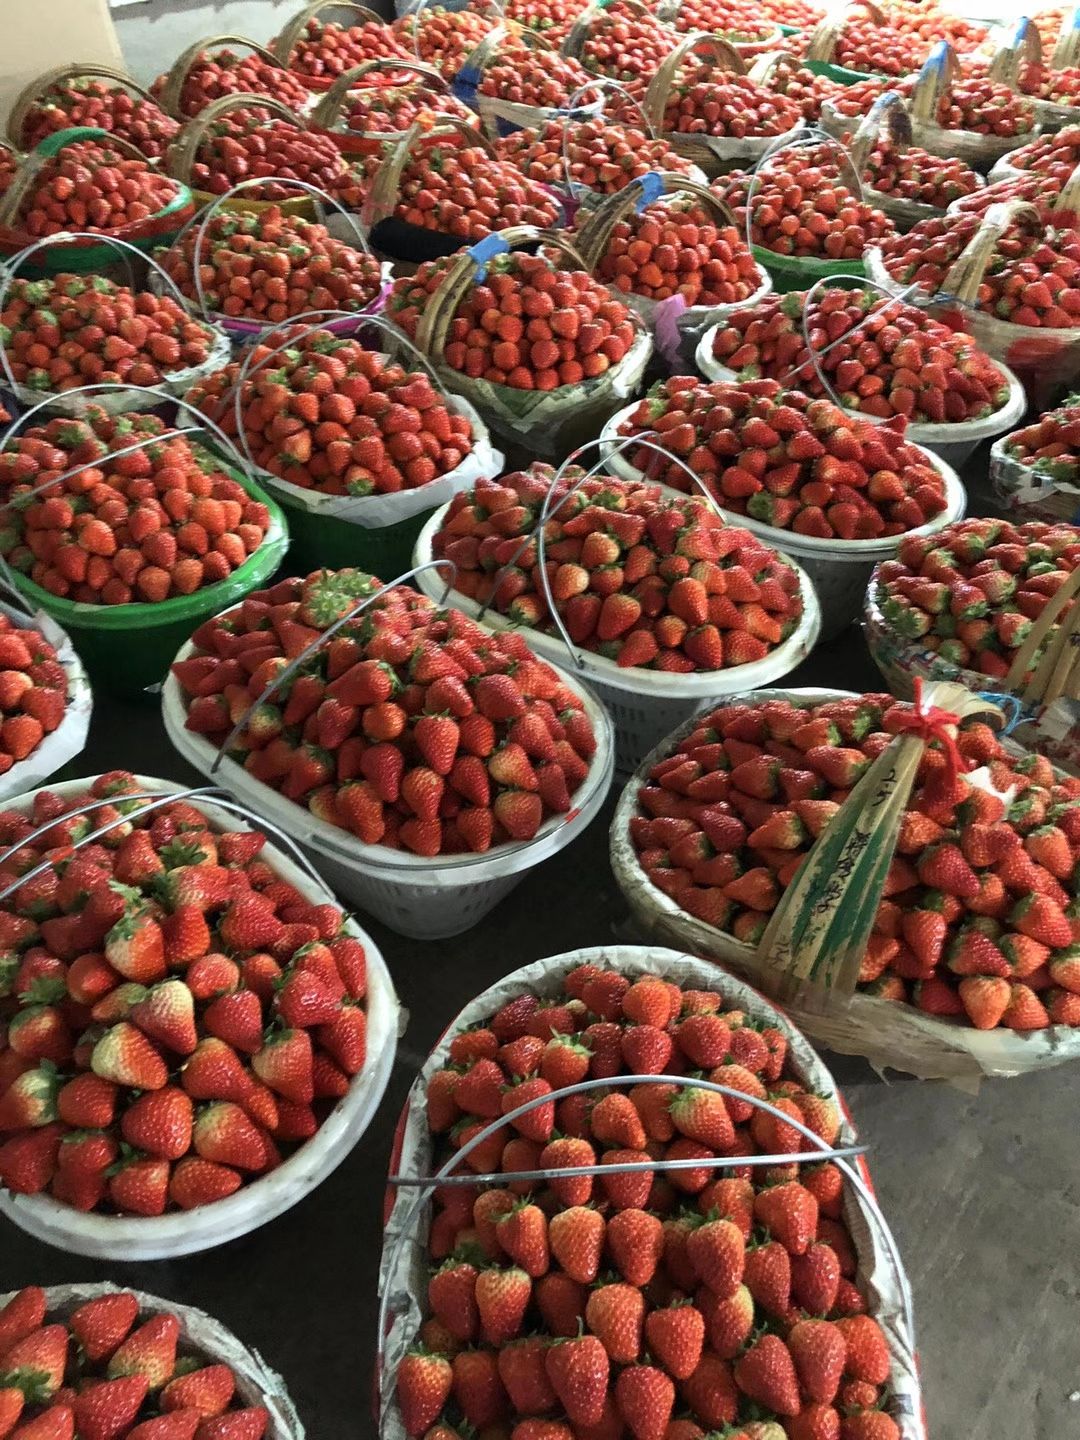 [长丰草莓批发]长丰草莓 长丰红颜草莓价格25元/斤 